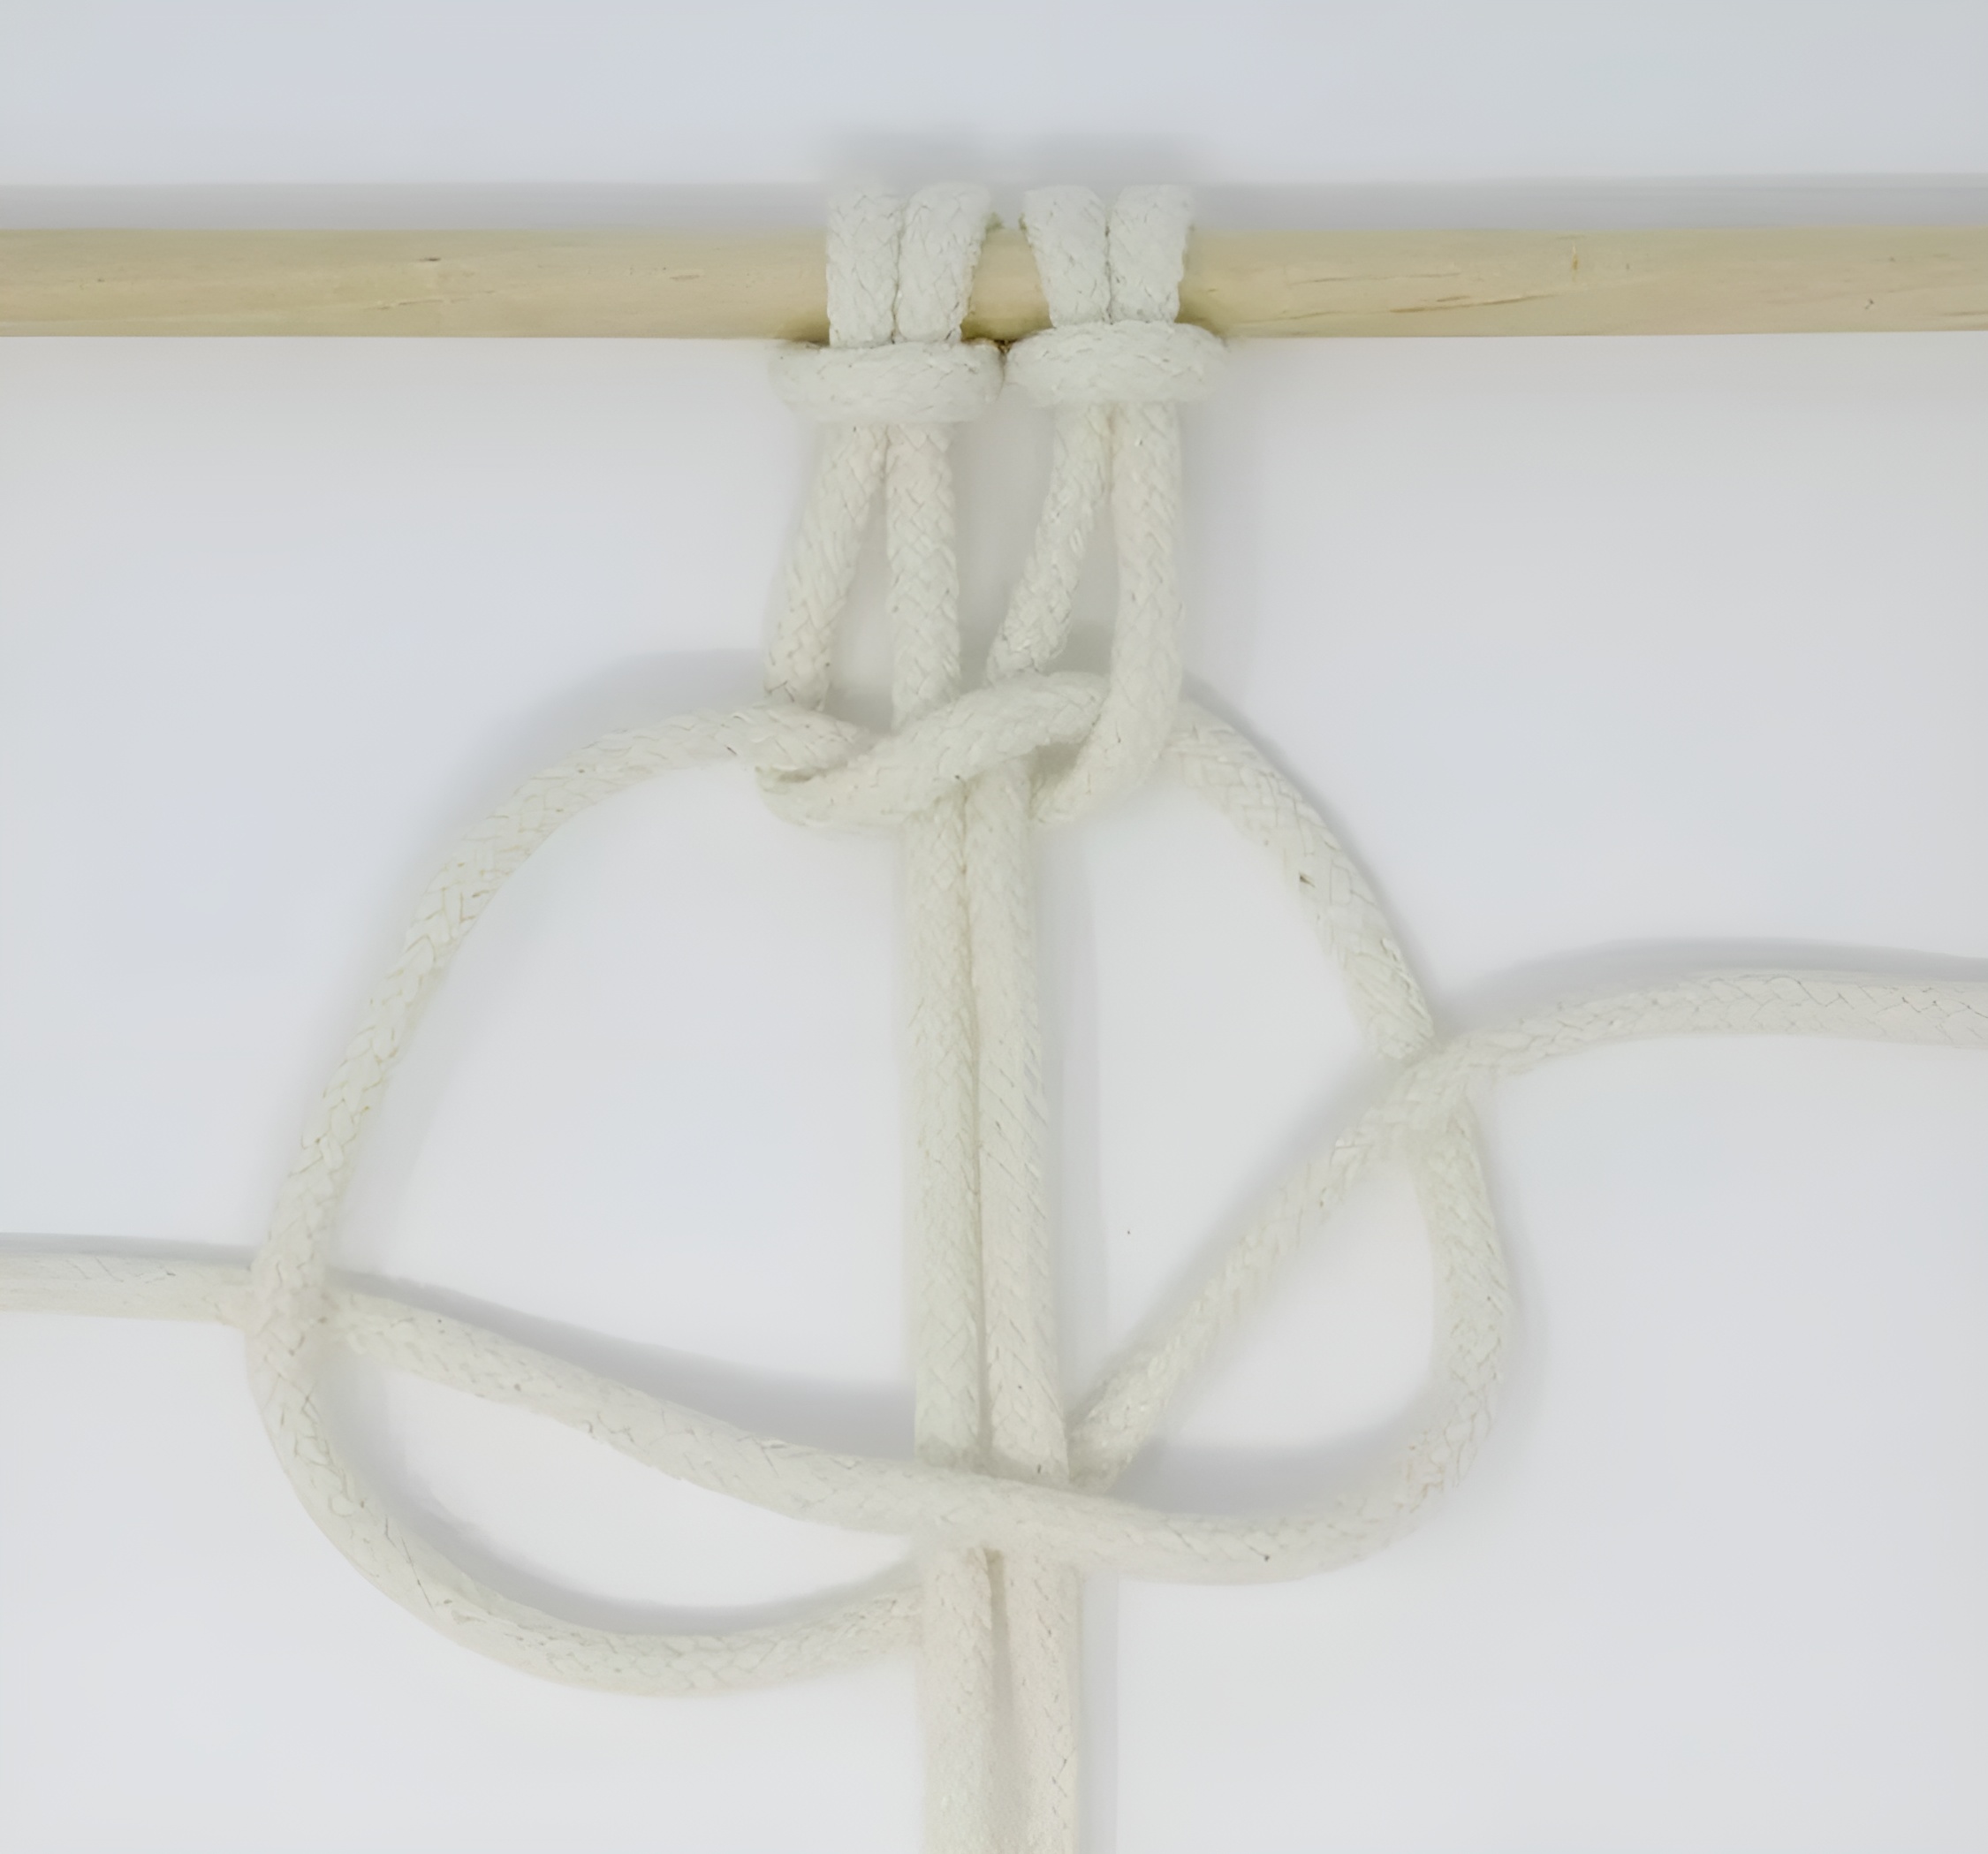 Lấy dây làm việc 4 và di chuyển nó sang bên phải dưới hai dây phụ và trên dây làm việc 1.